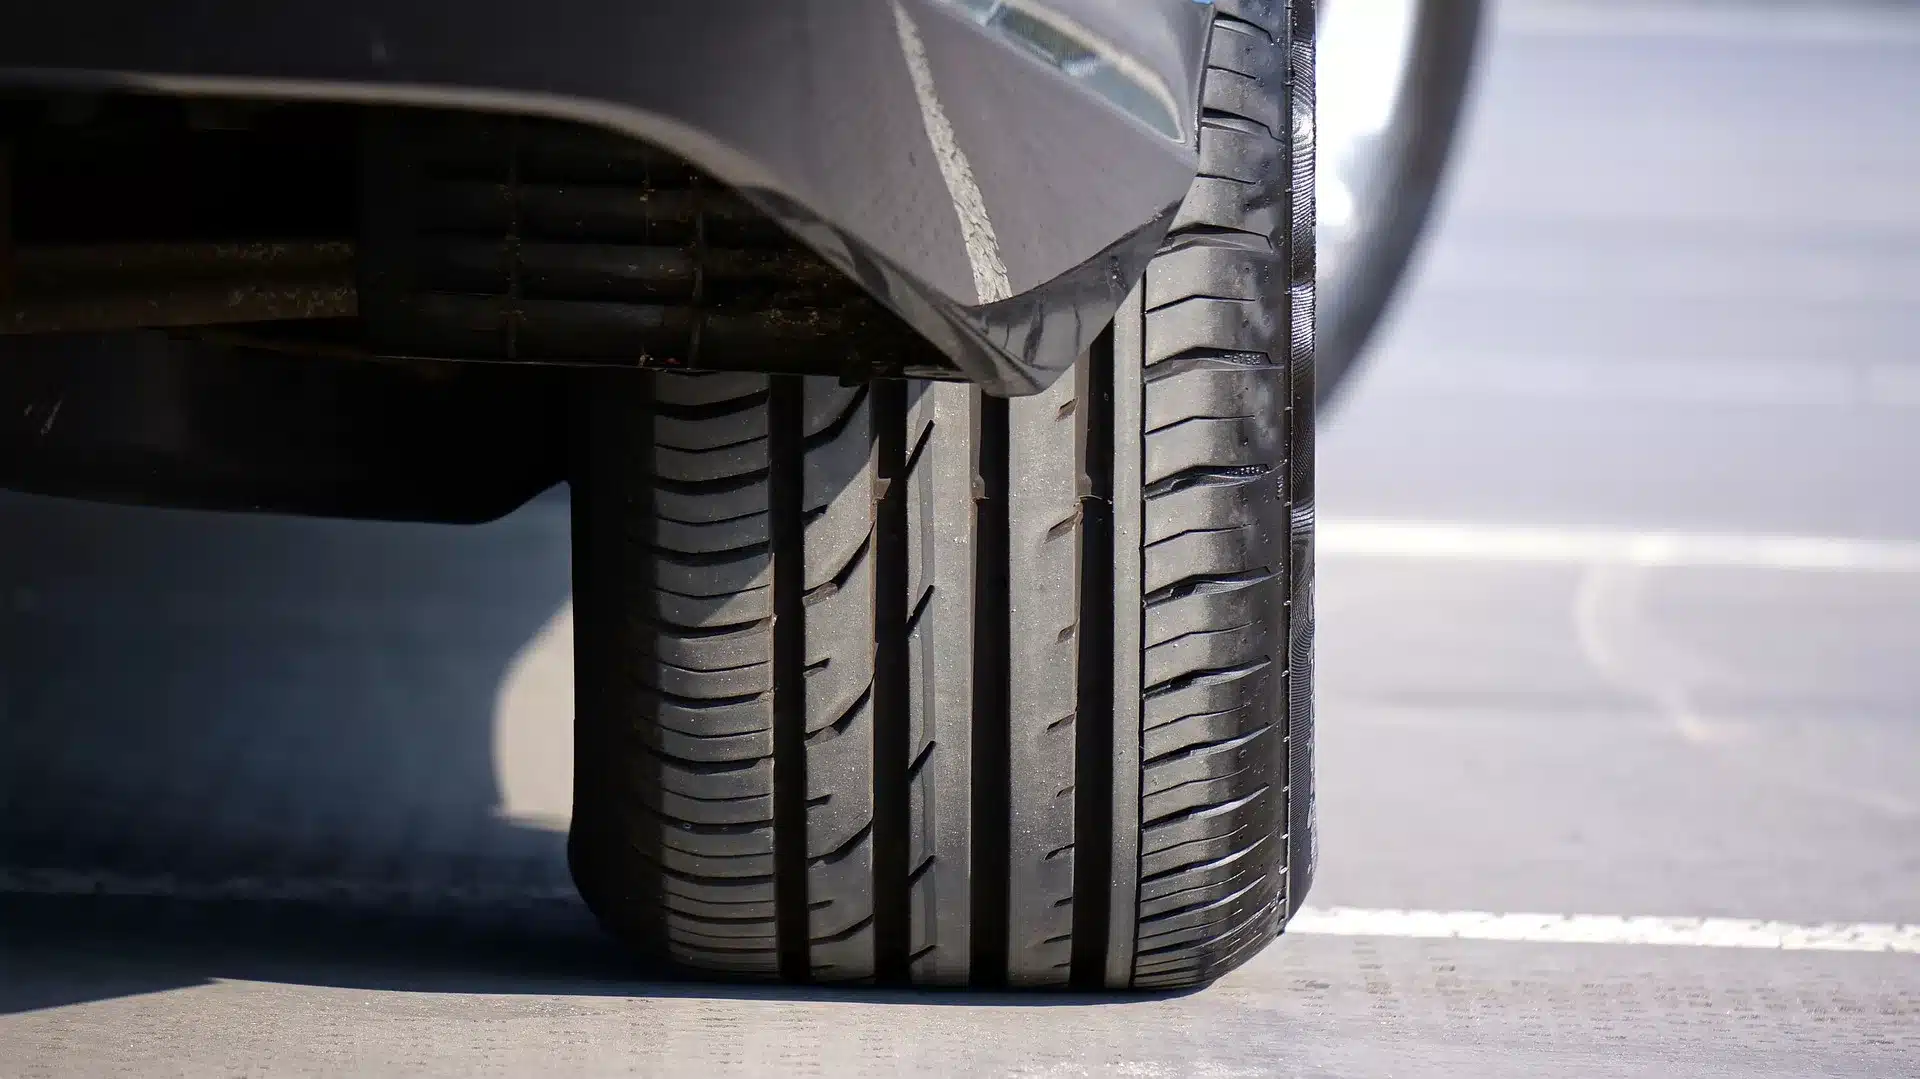 Un kit de réparation de pneus est-il une solution pratique ? Non !